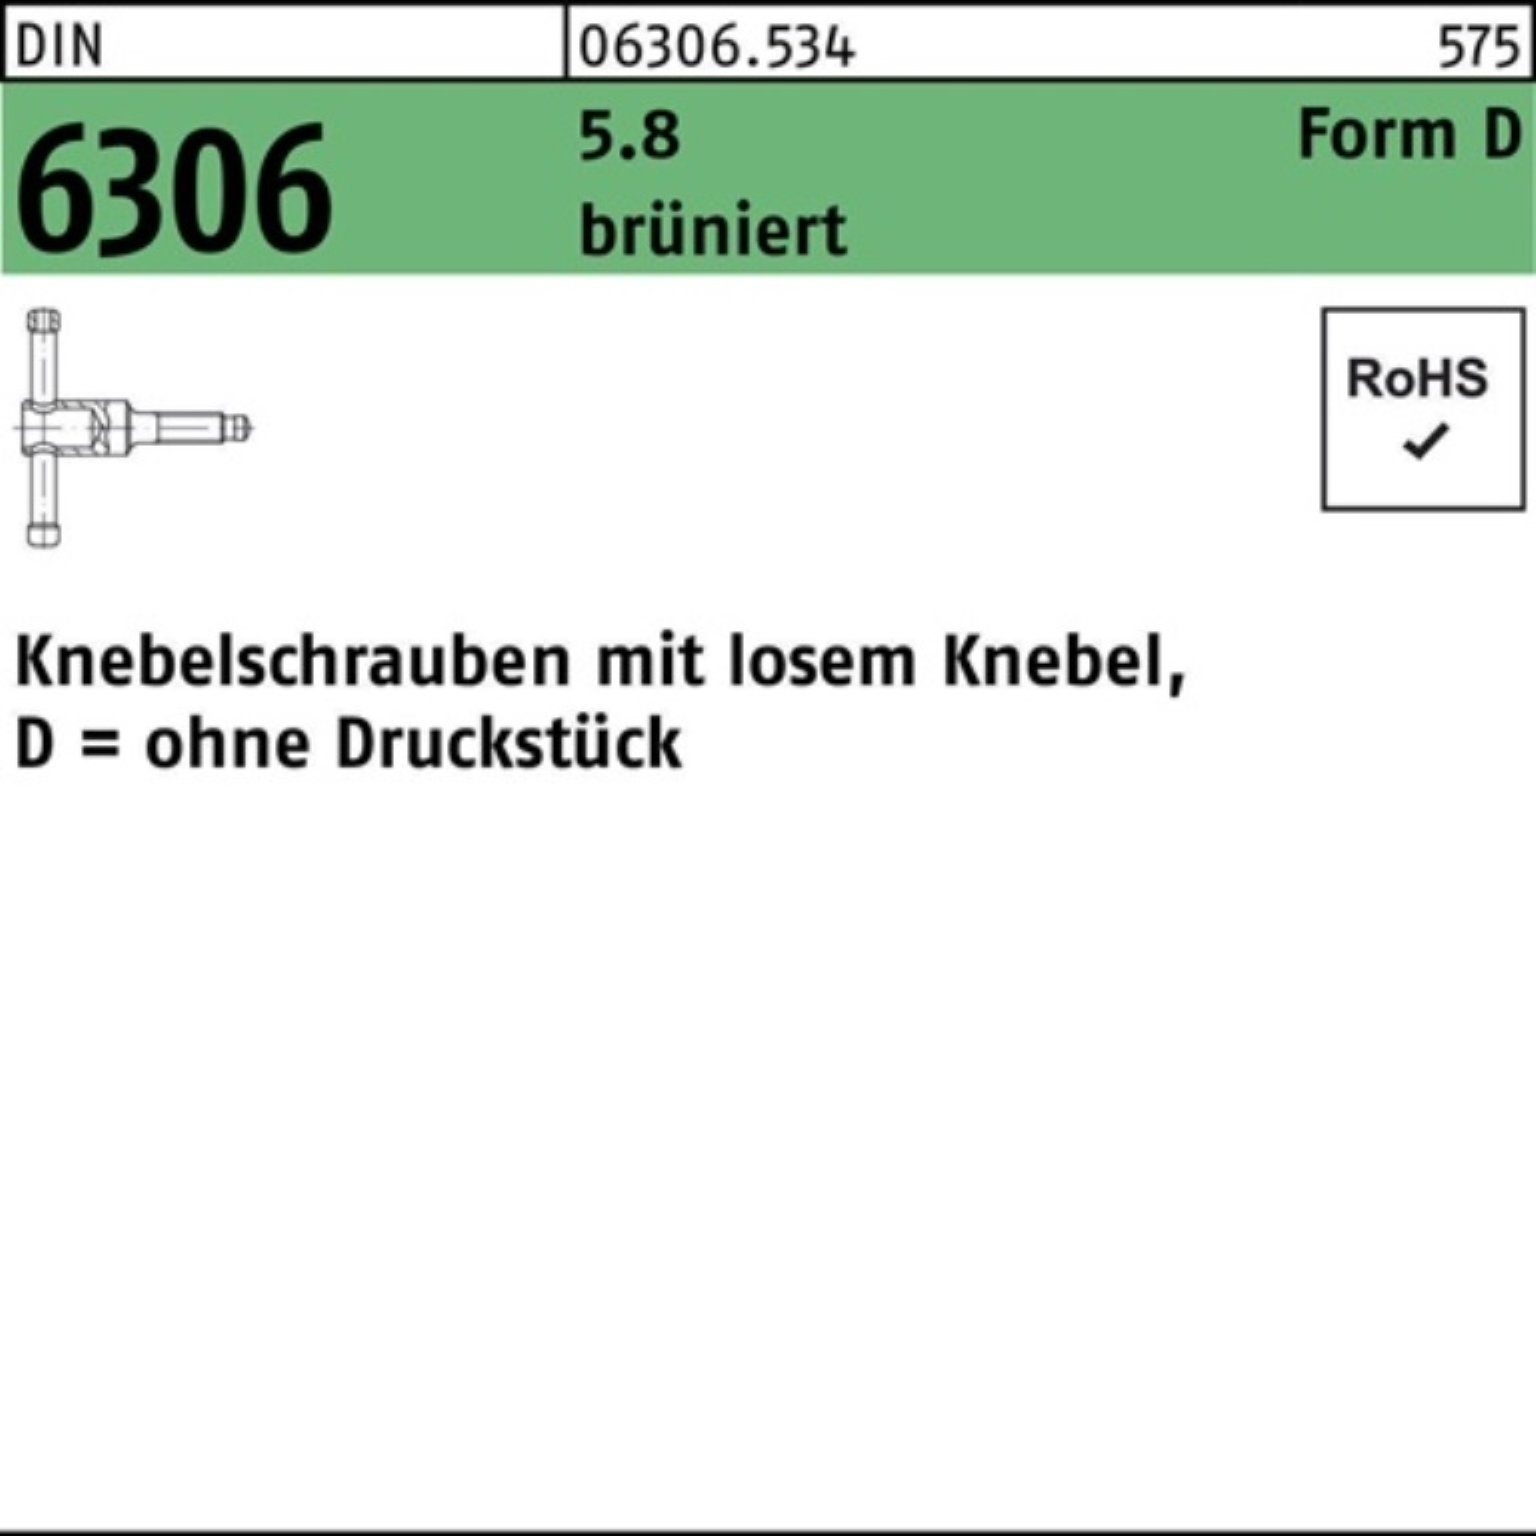 55 16x losen Reyher Pack 100er Knebel Knebelschraube brünier DM 5.8 6306 DIN Schraube